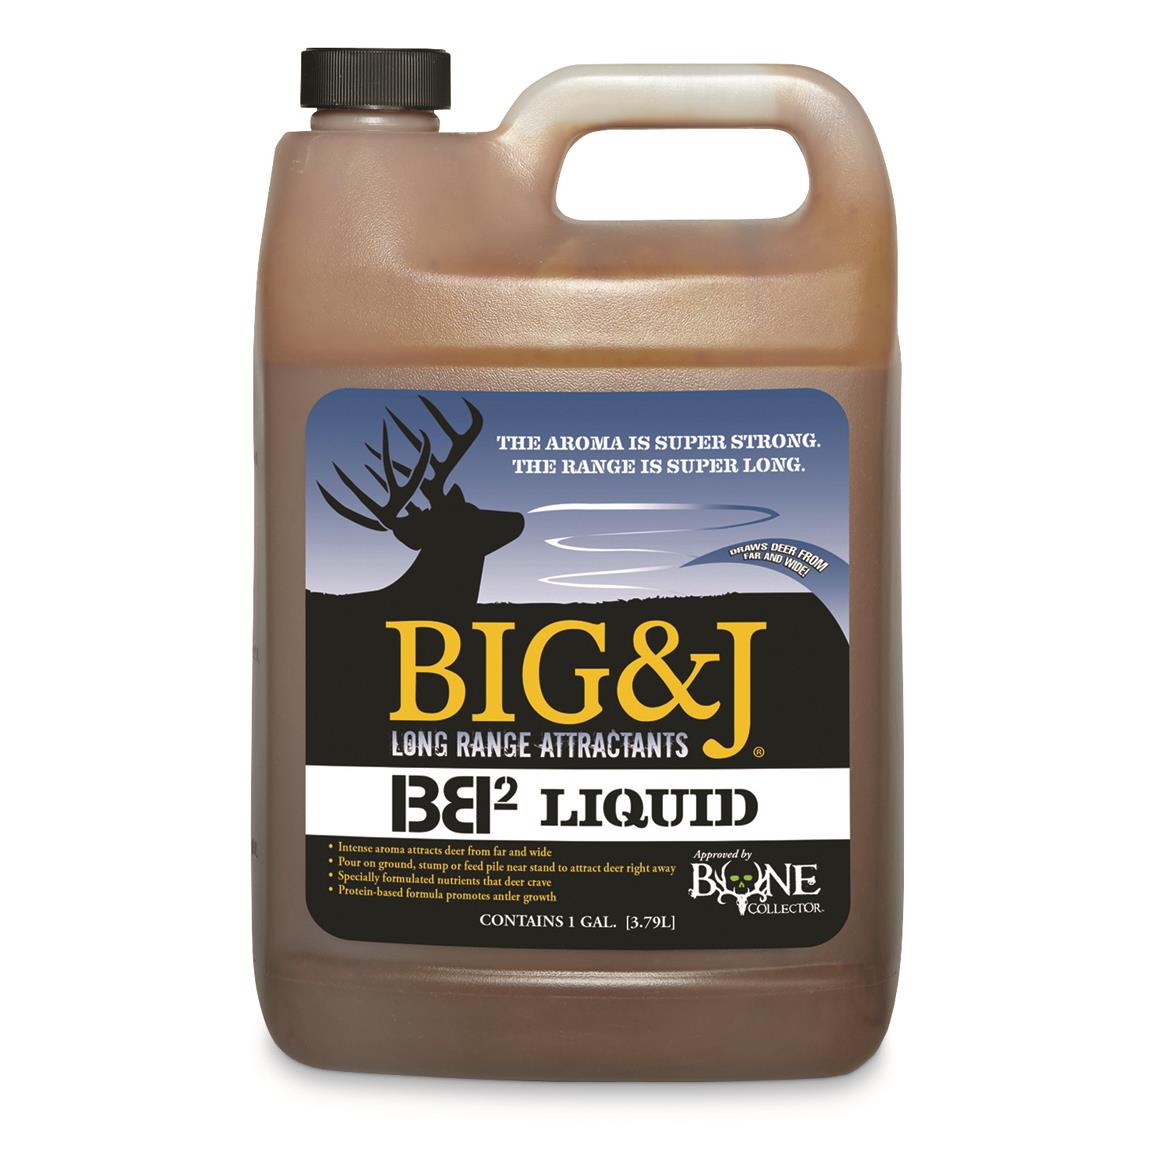 Big & J BB2 Liquid, 1 gallon